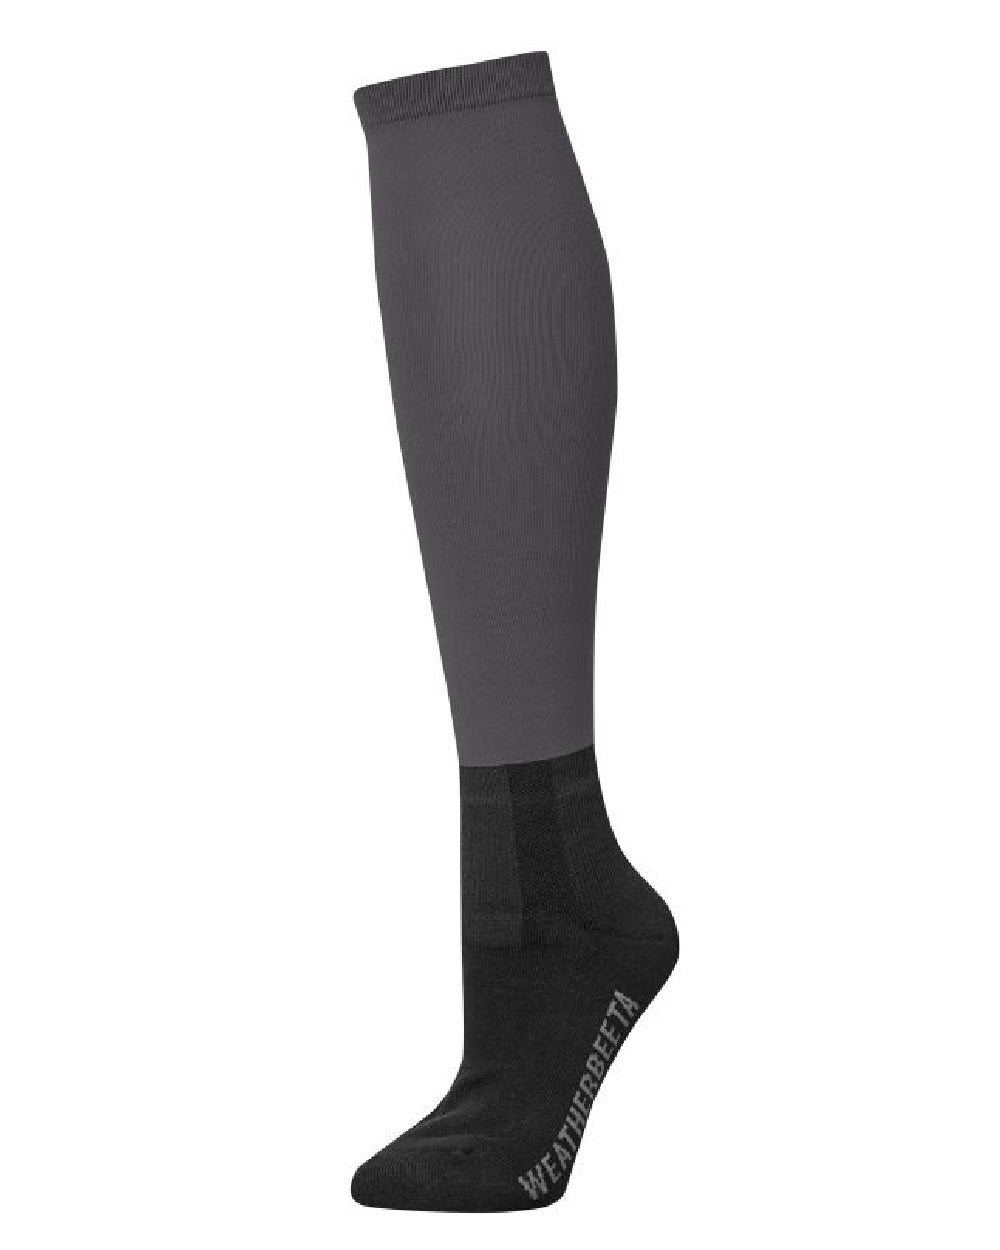 WeatherBeeta Prime Stocking Socks in Black 